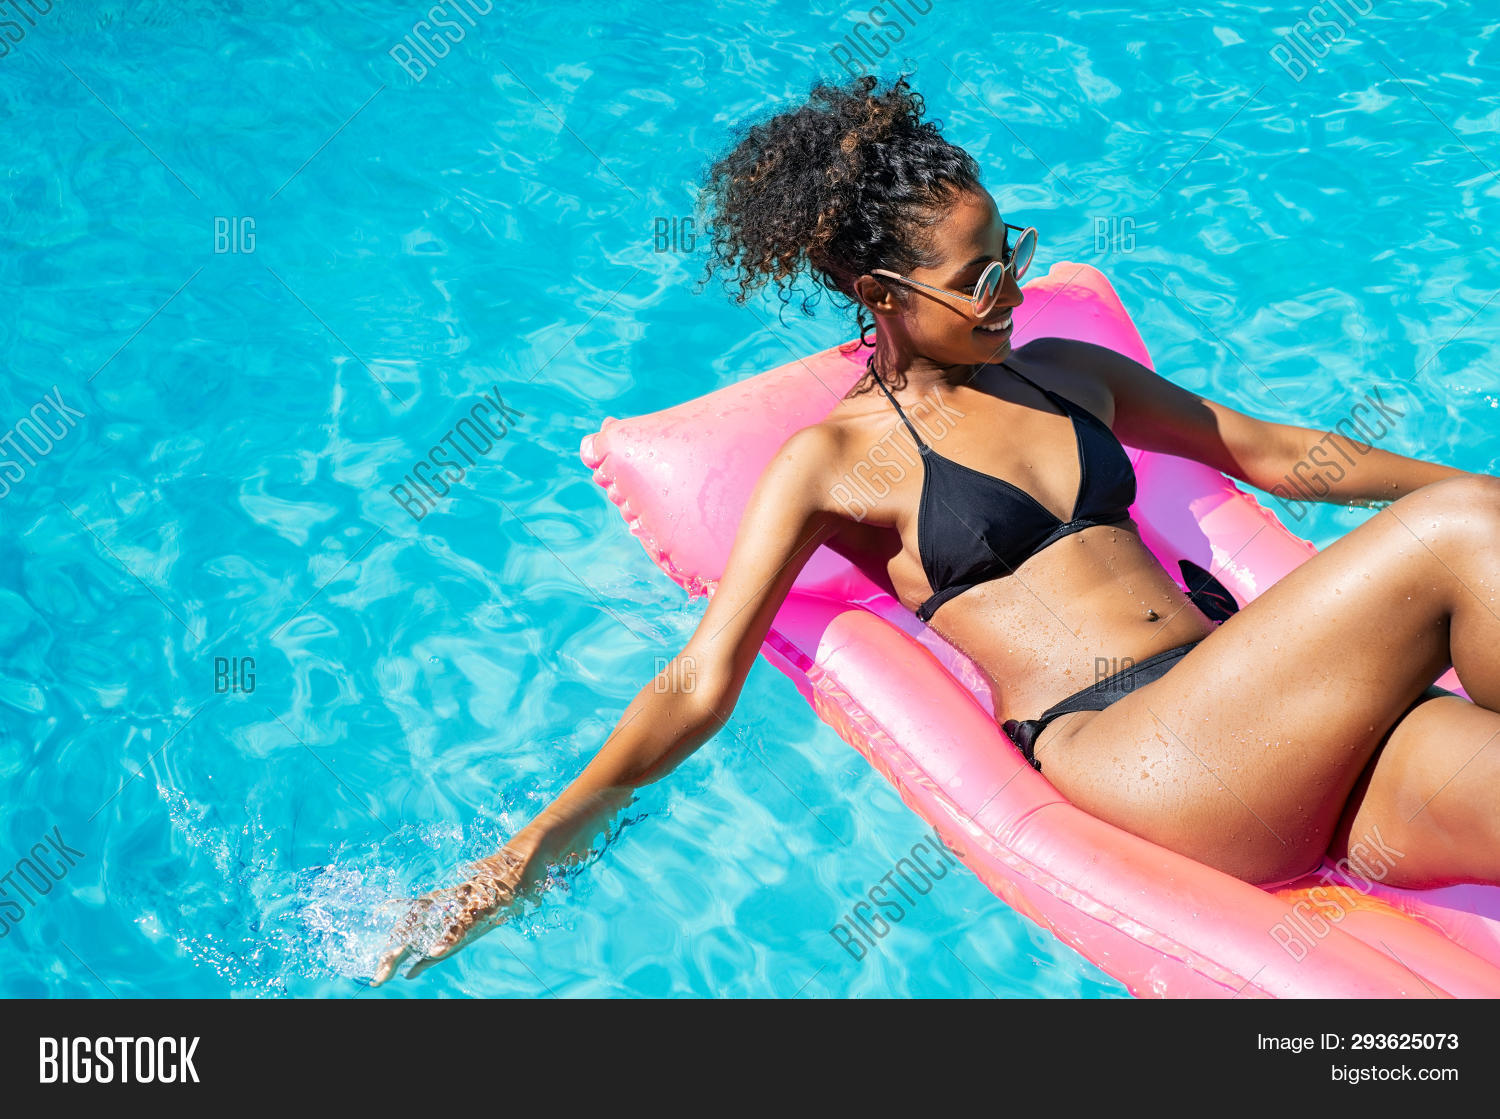 young woman in a bikini